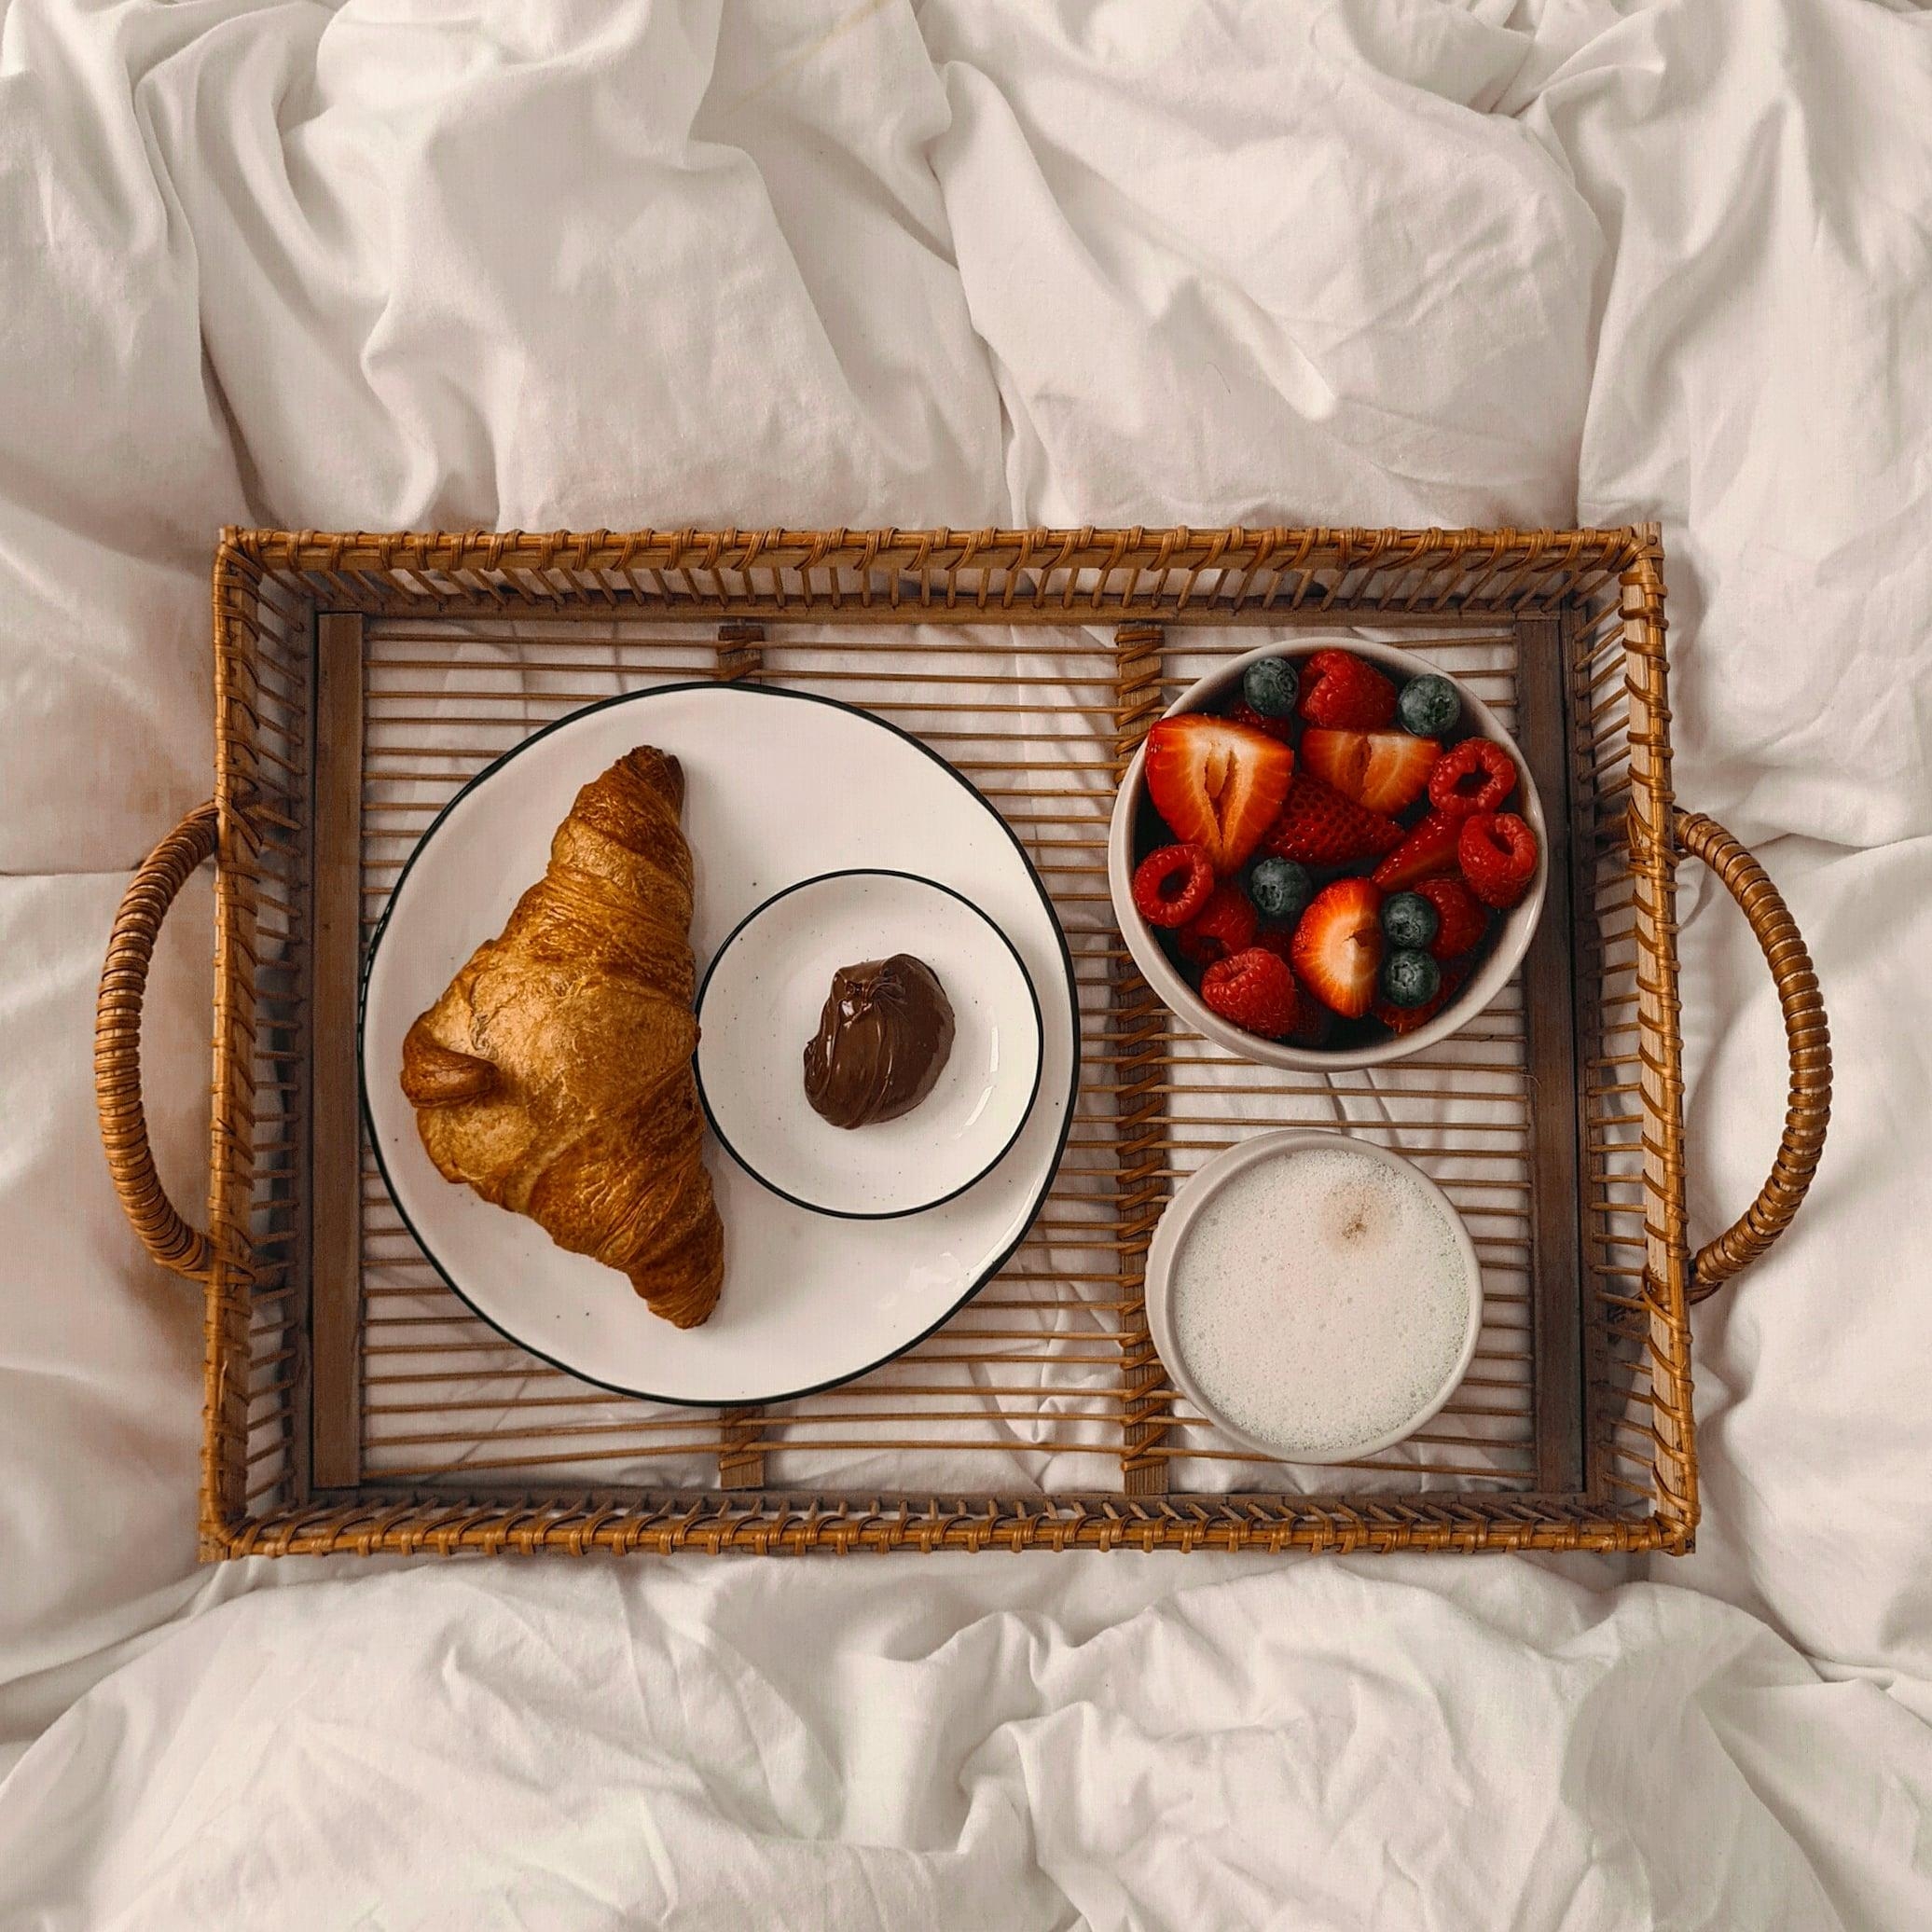 frühstück im bett 😍 #frühstücksliebe #wochenende #gemütlichkeit